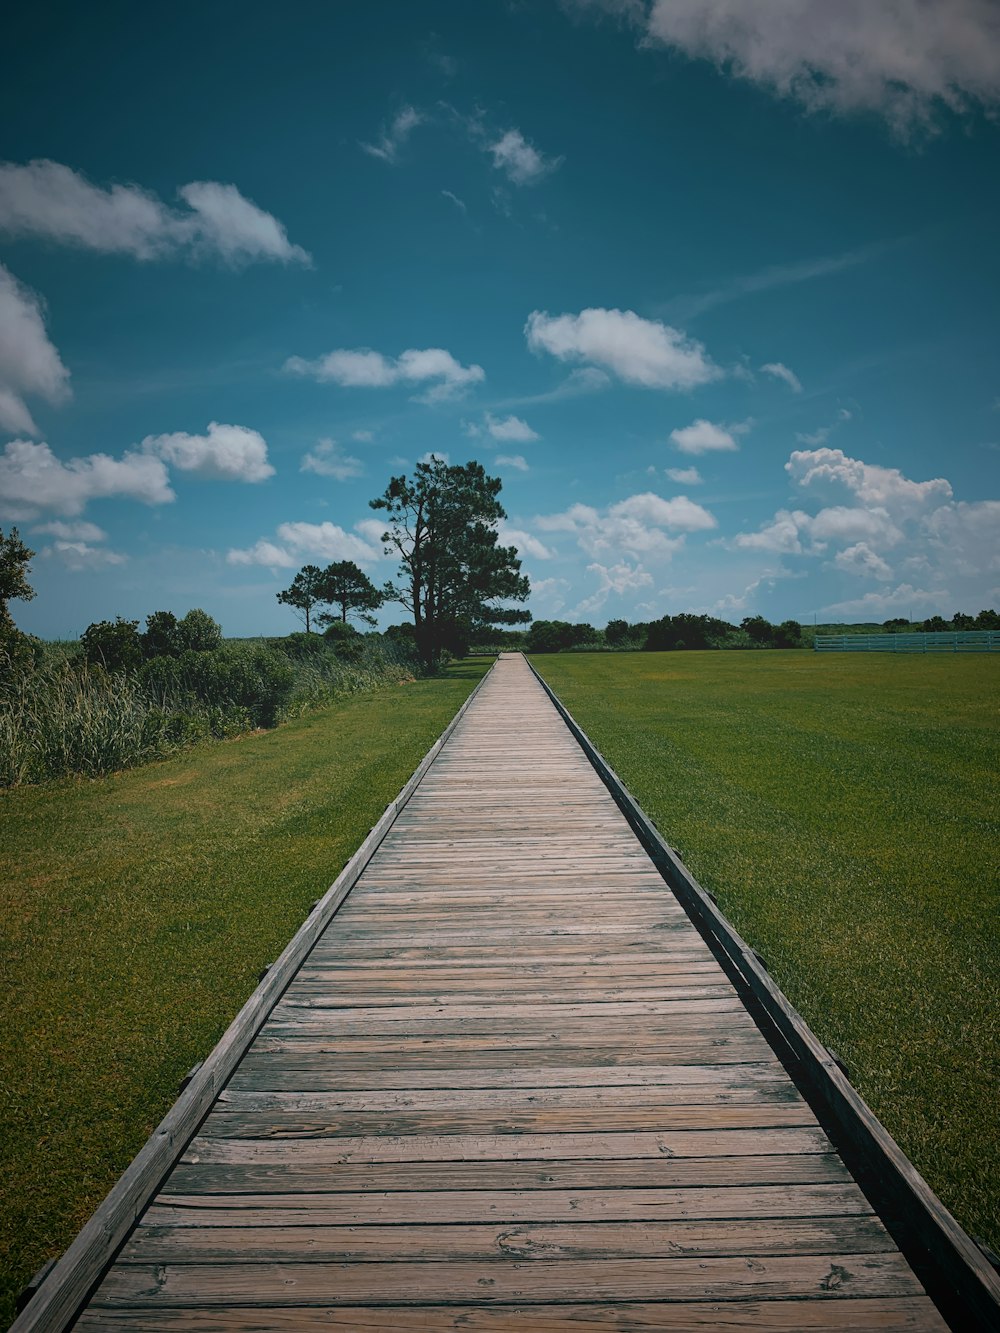 sentier en bois brun entre le champ d’herbe verte sous le ciel nuageux bleu et blanc pendant la journée